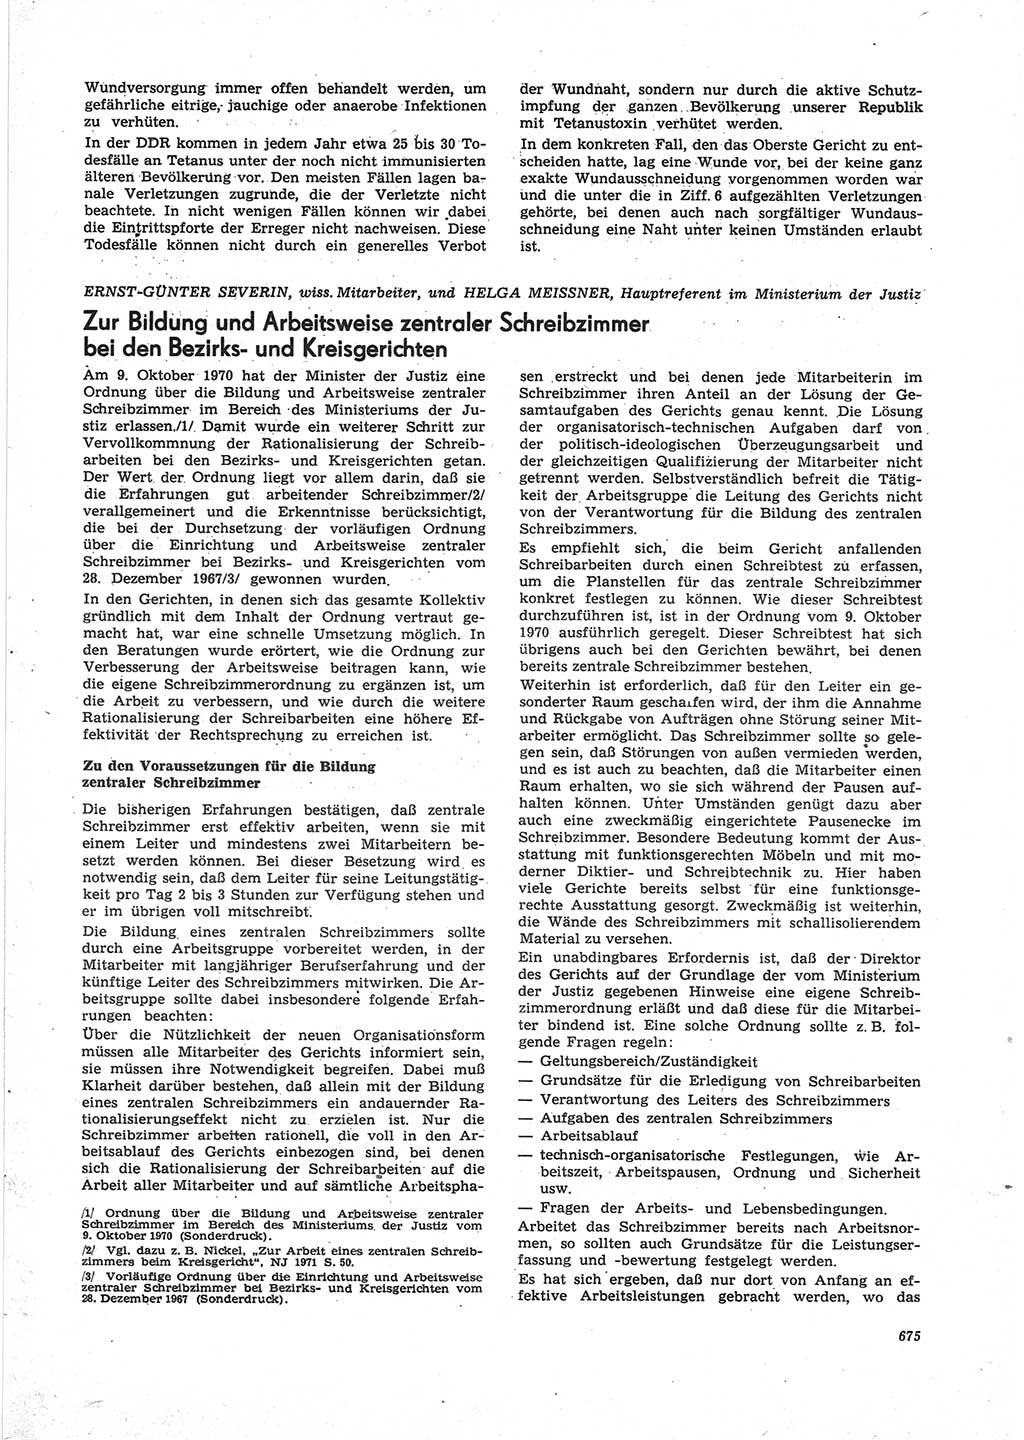 Neue Justiz (NJ), Zeitschrift für Recht und Rechtswissenschaft [Deutsche Demokratische Republik (DDR)], 25. Jahrgang 1971, Seite 675 (NJ DDR 1971, S. 675)